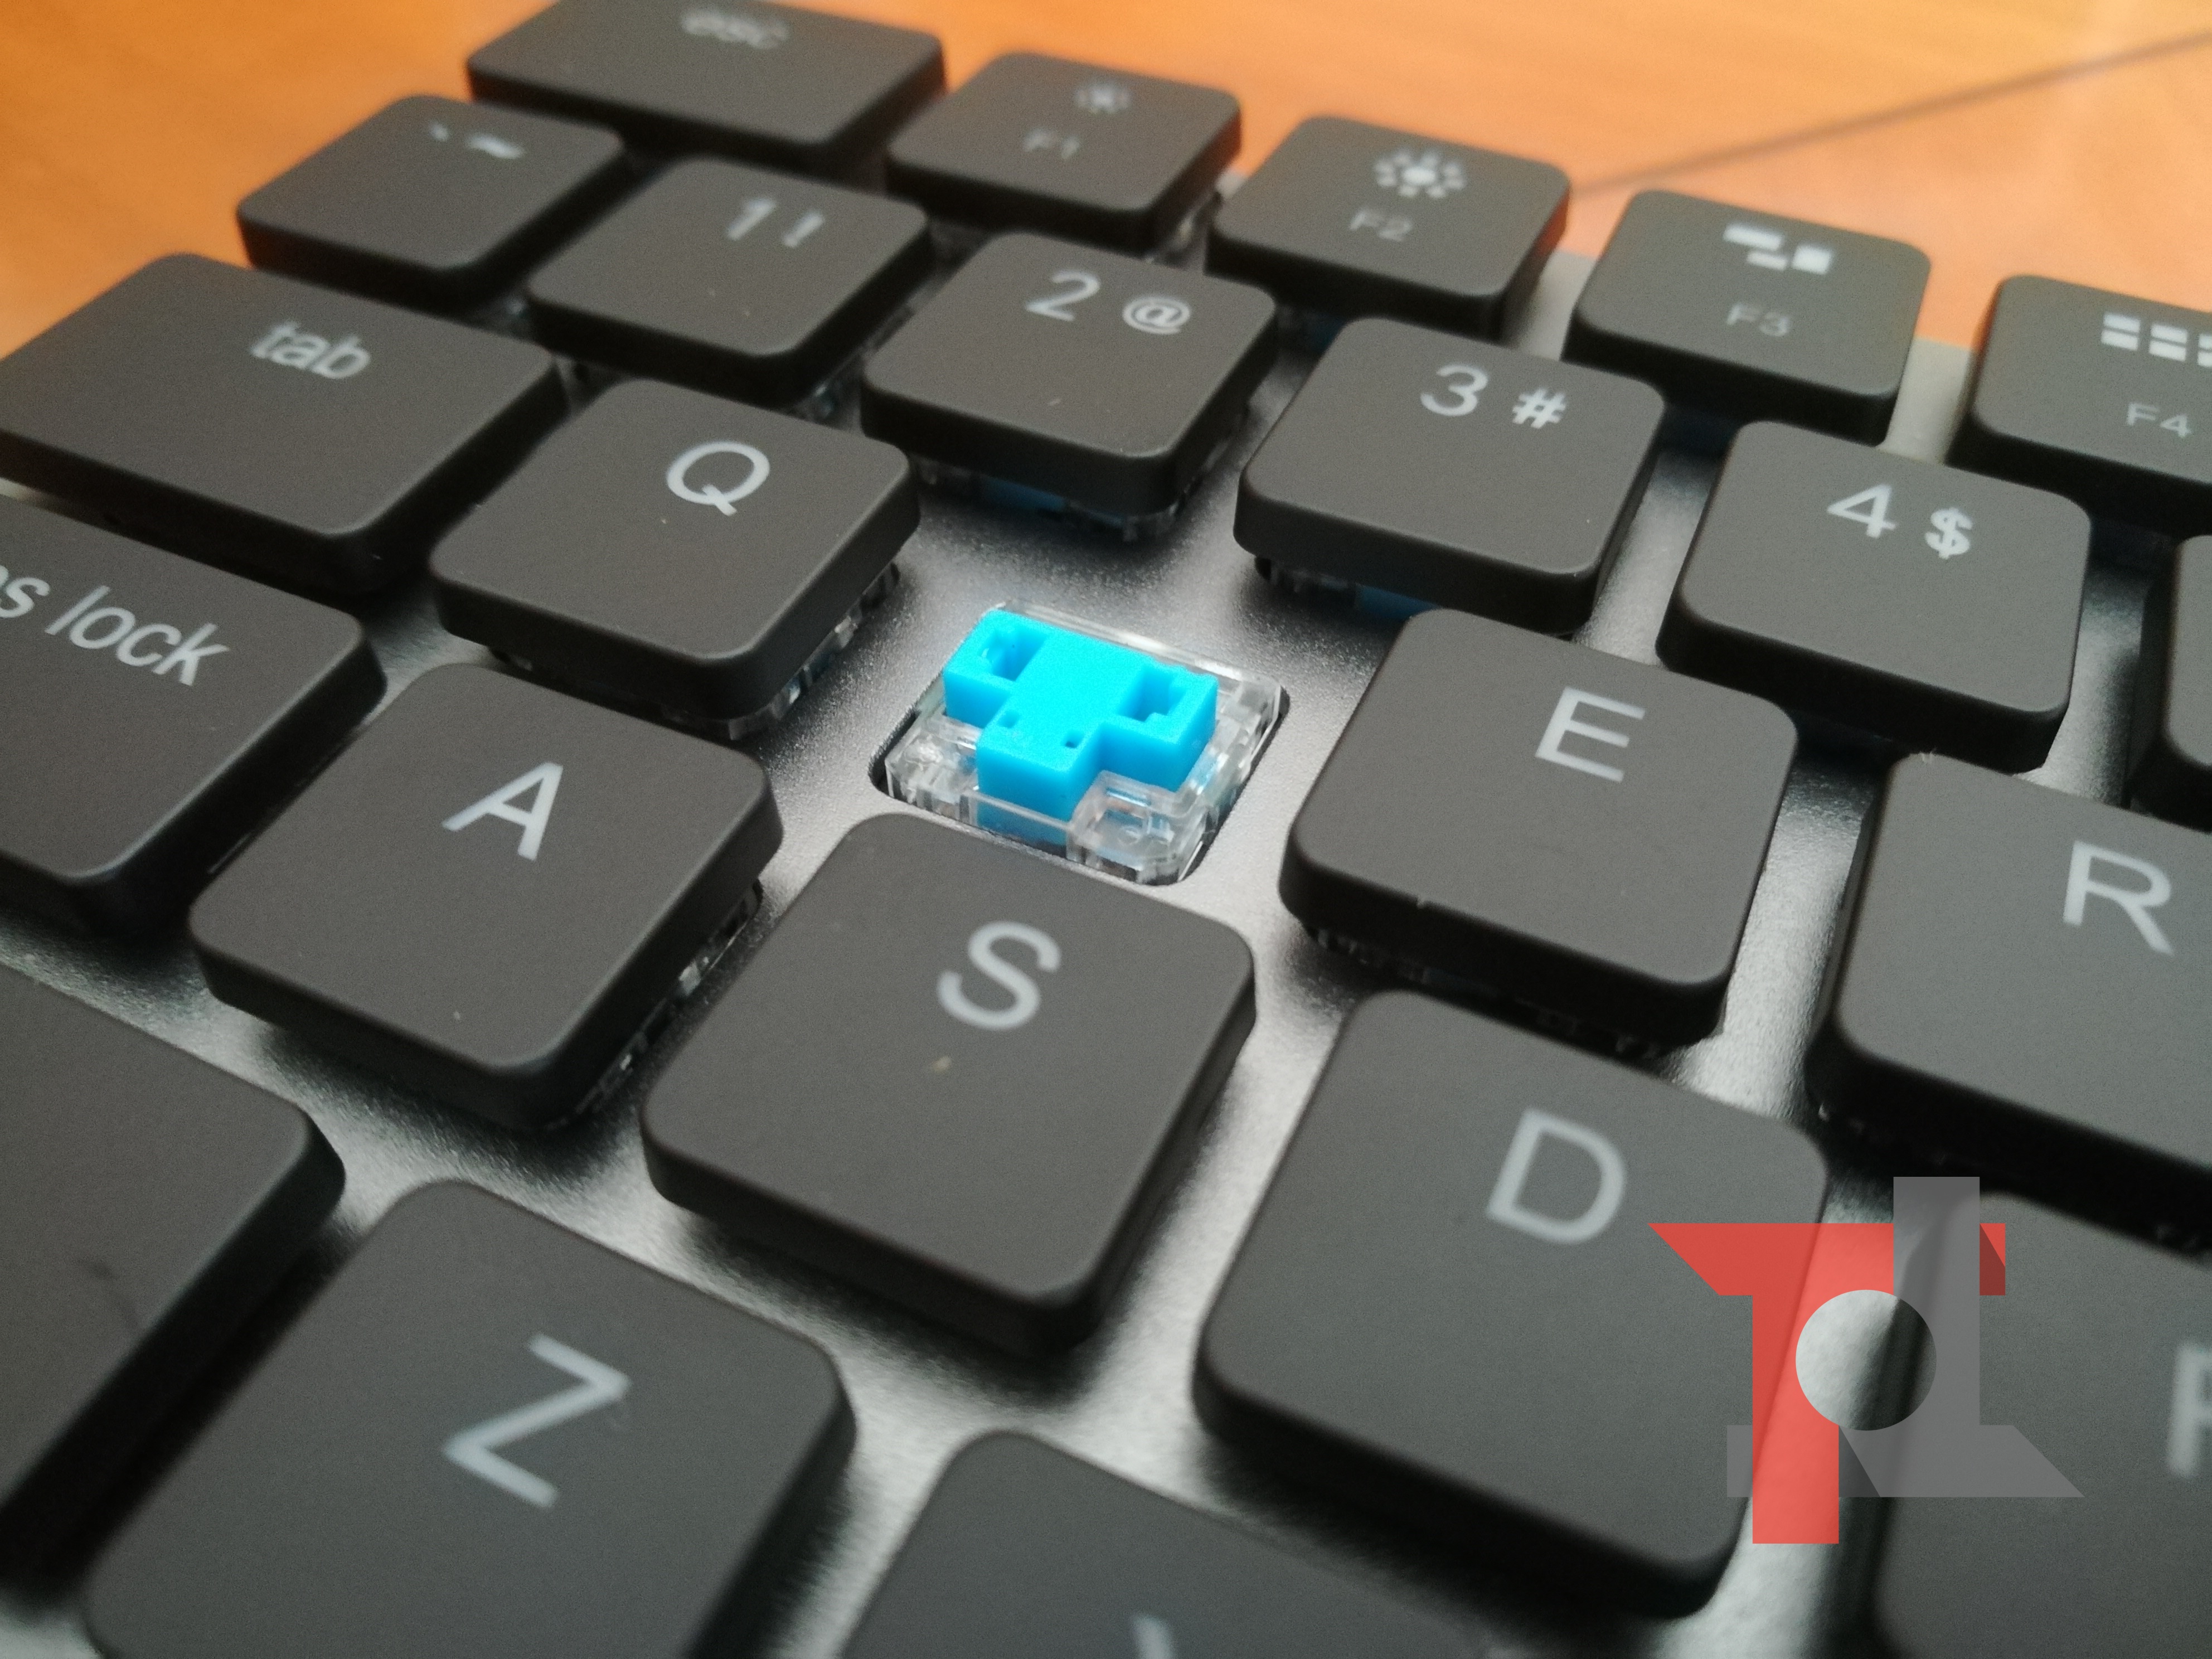 Recensione Vinpok Taptek, la tastiera meccanica per Mac più sottile al mondo 3